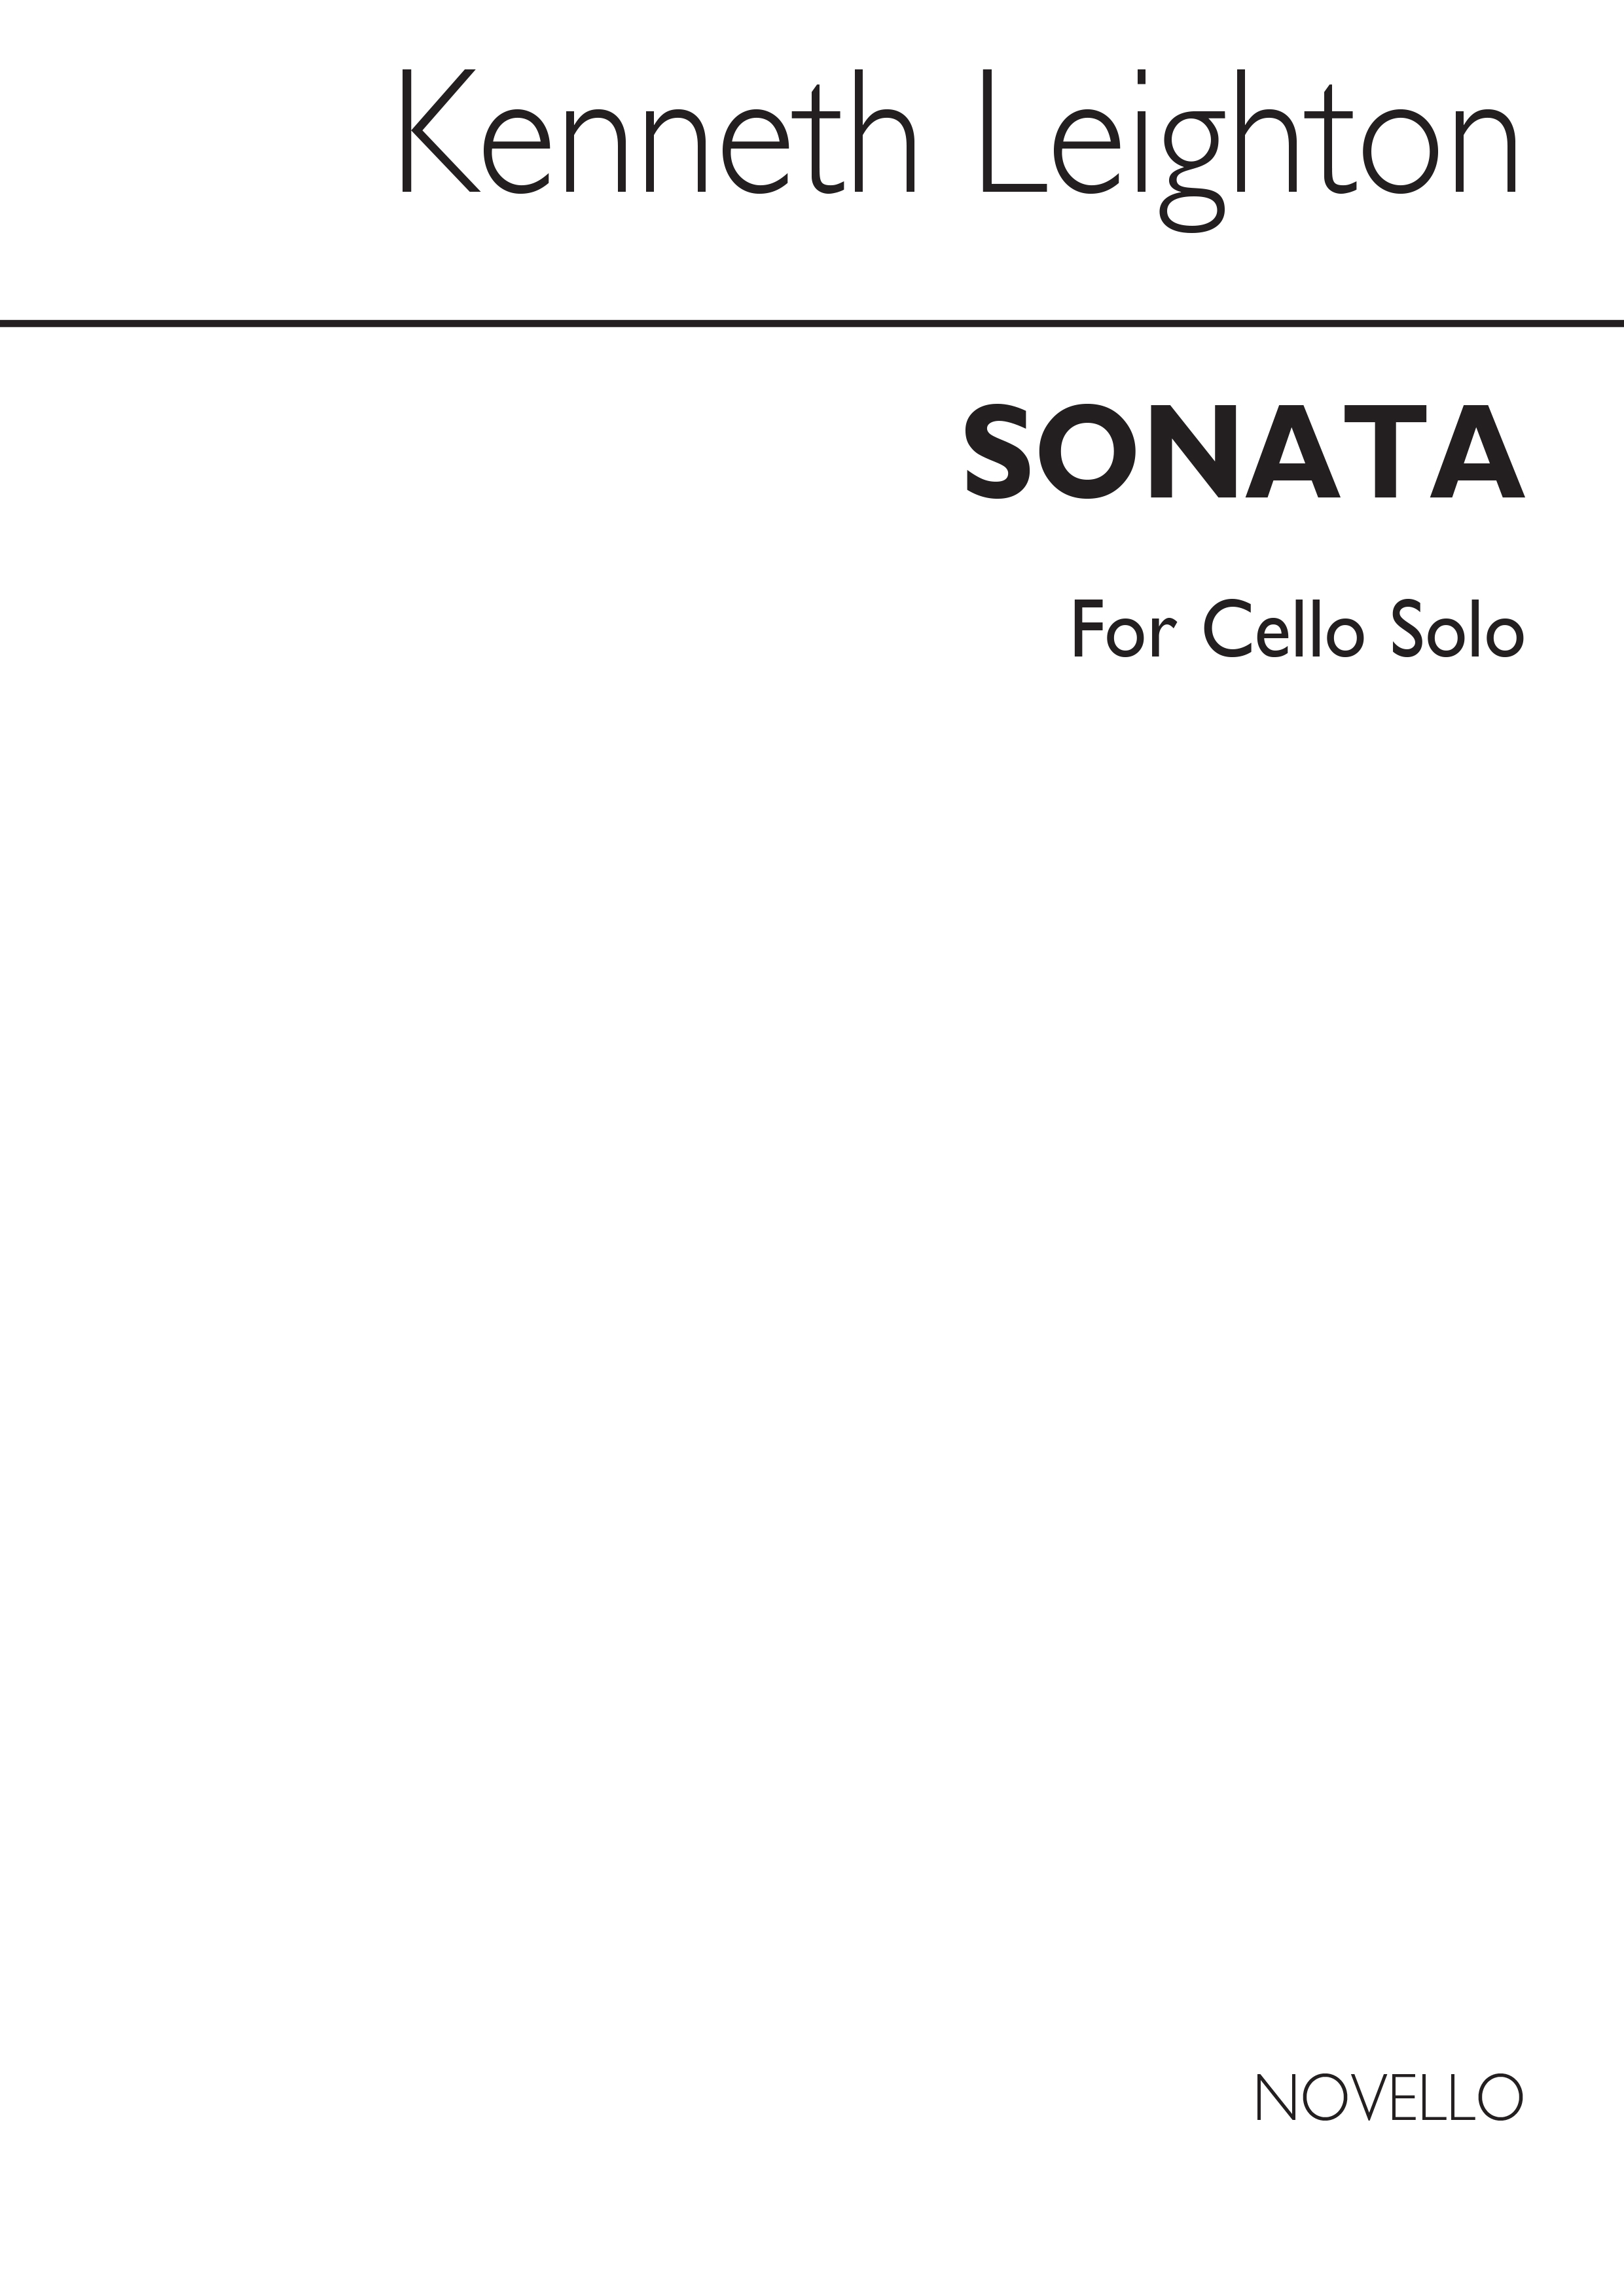 Kenneth Leighton: Sonata For Cello Solo